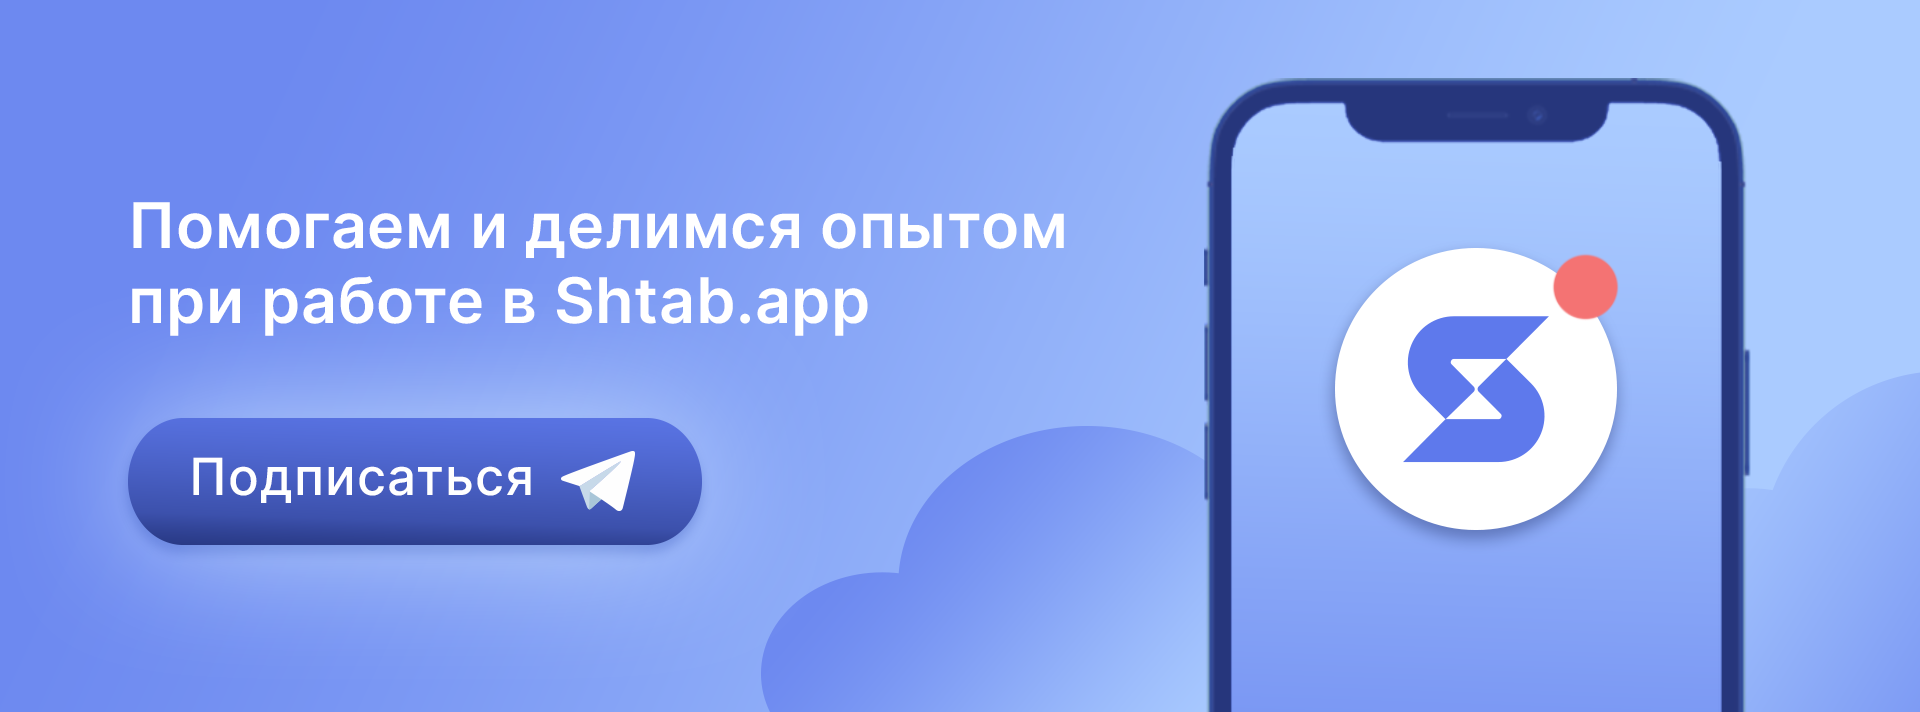 Shtab — российский сервис для управления проектами и задачами